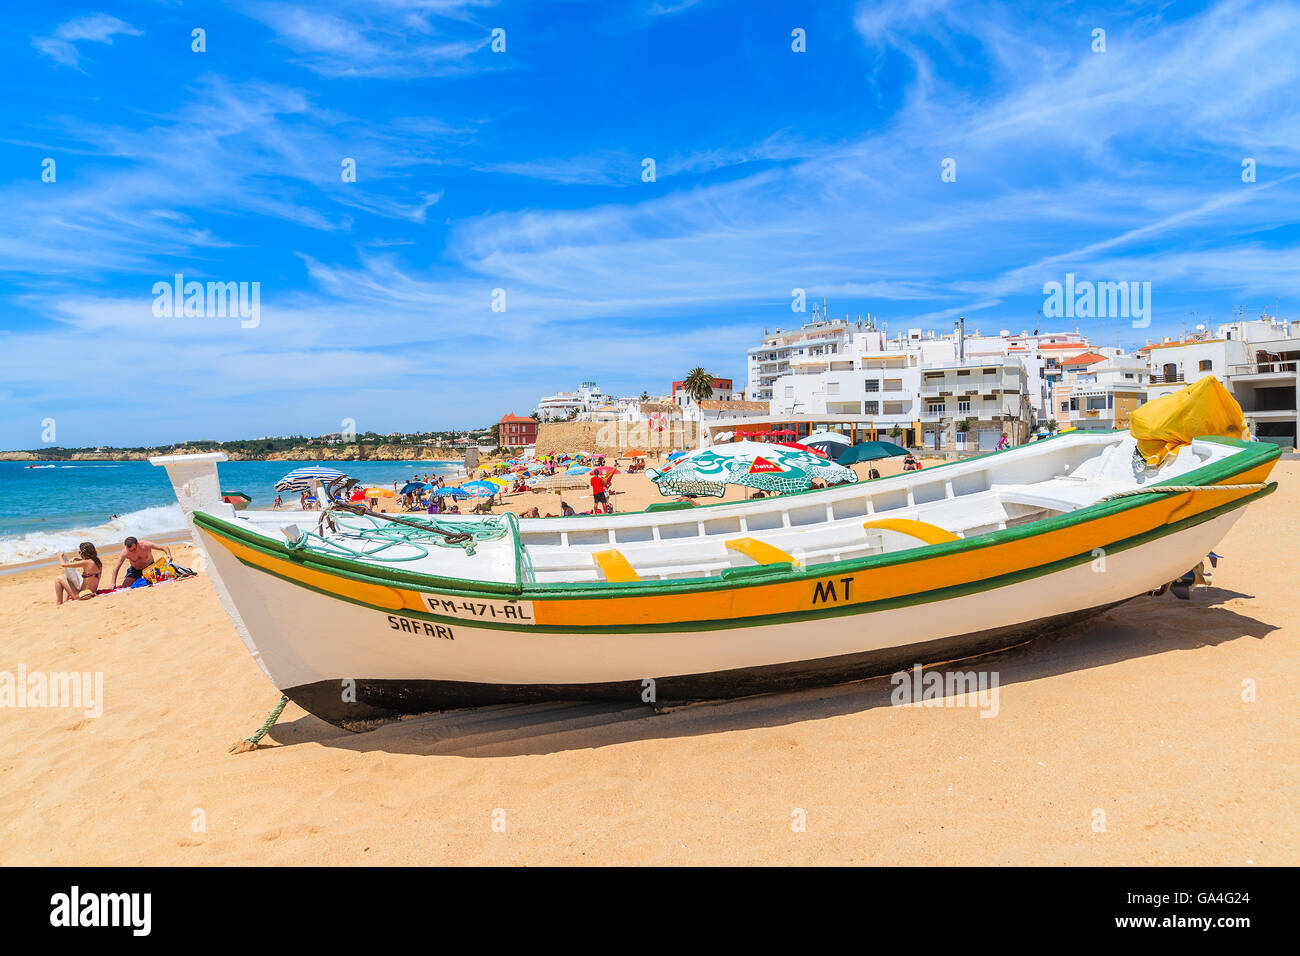 ARMACAO DE PERA Beach, Portogallo - 17 Maggio 2015: tipico colorate barche da pesca sulla spiaggia di Armacao de Pera città costiera. Regione di Algarve è meta di vacanze in Portogallo. Foto Stock